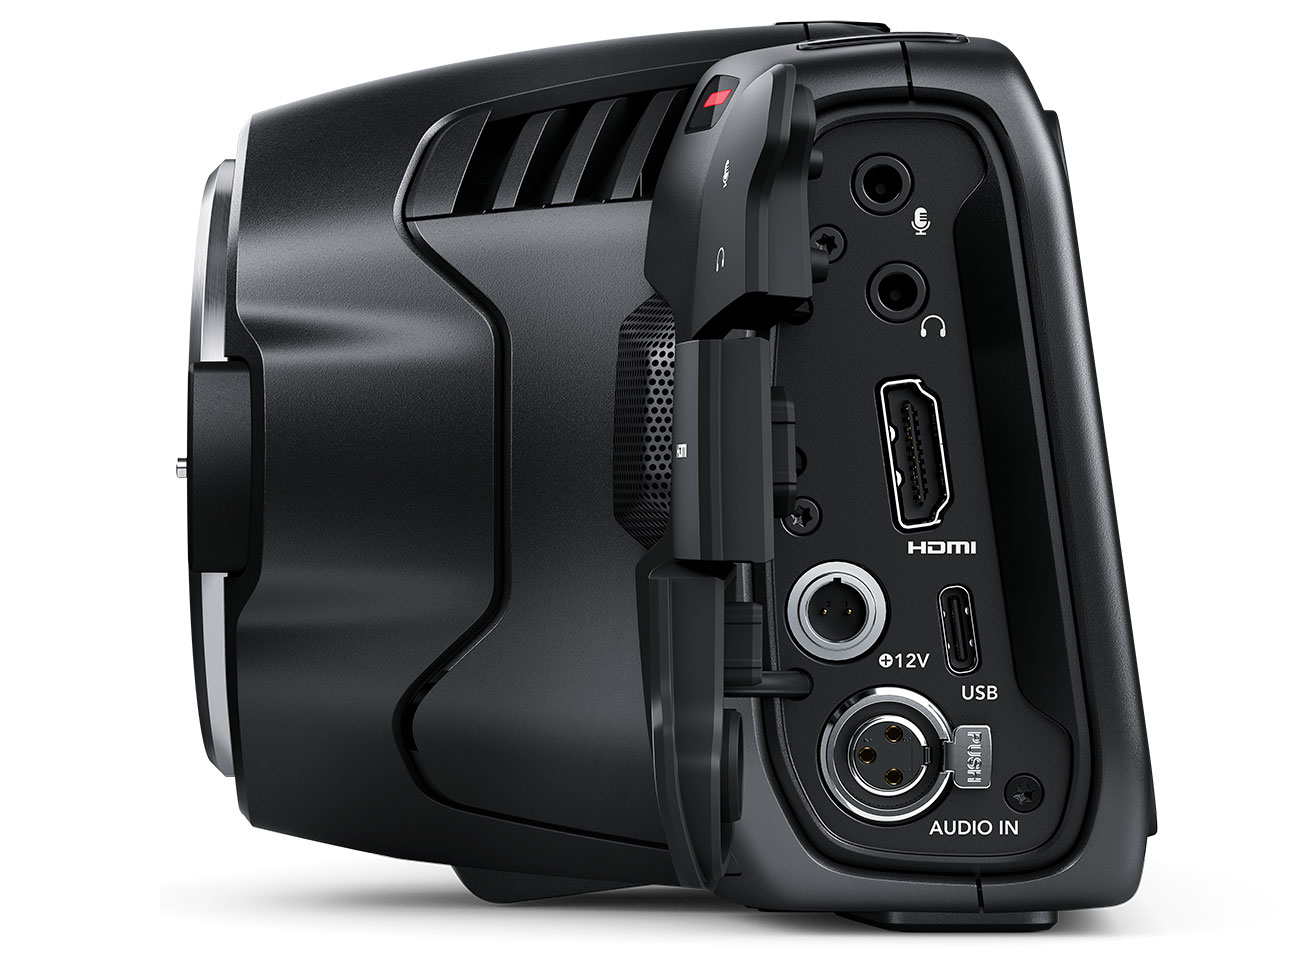 blackmagic 6k camera